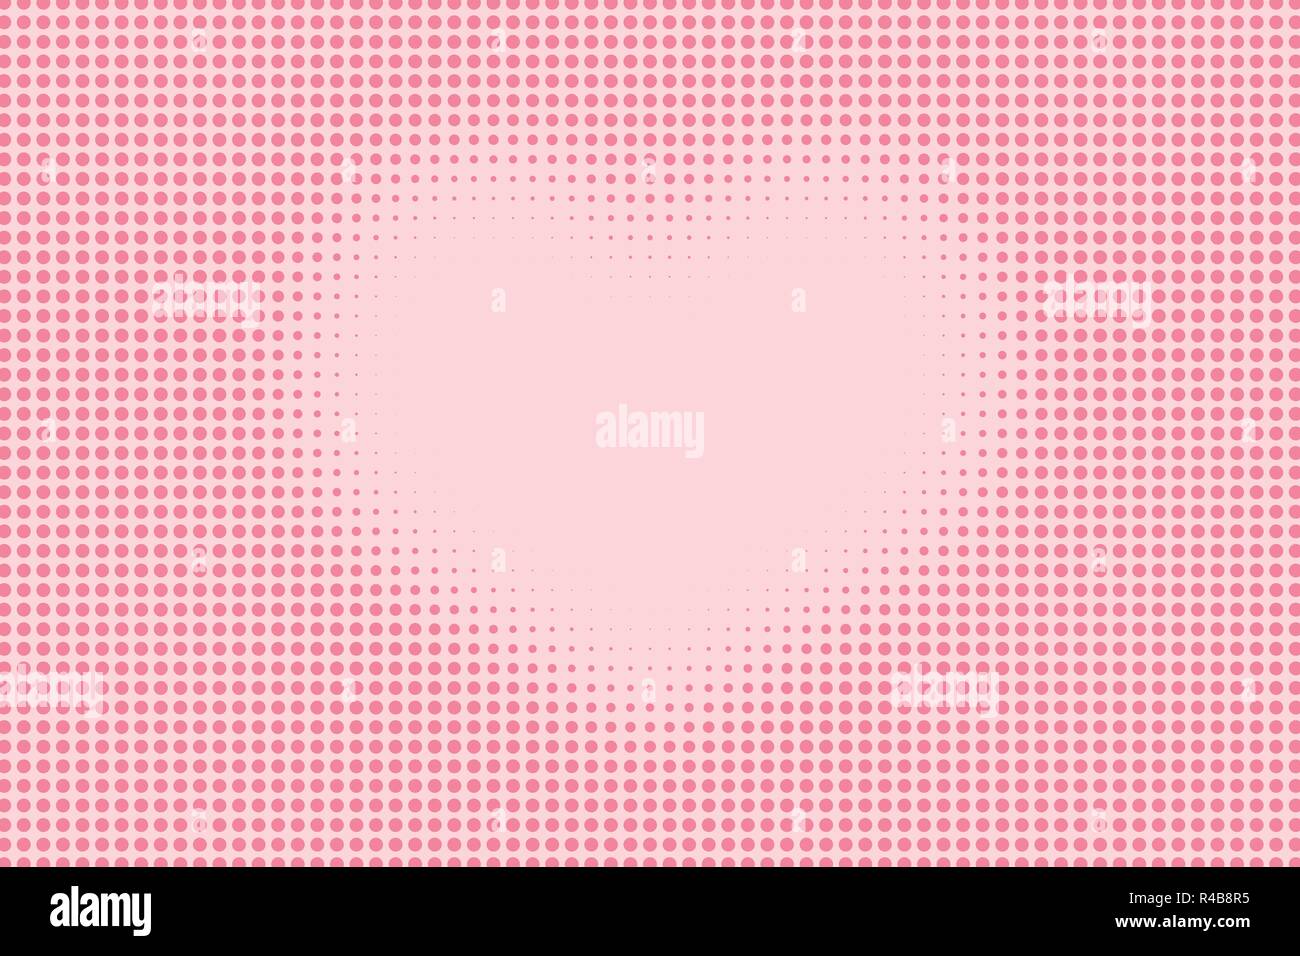 Punteggiate di halftone cuore modello di forma come sfondo. Fumetto pop art style punti rosa texture vettoriali per la progettazione grafica e web Illustrazione Vettoriale